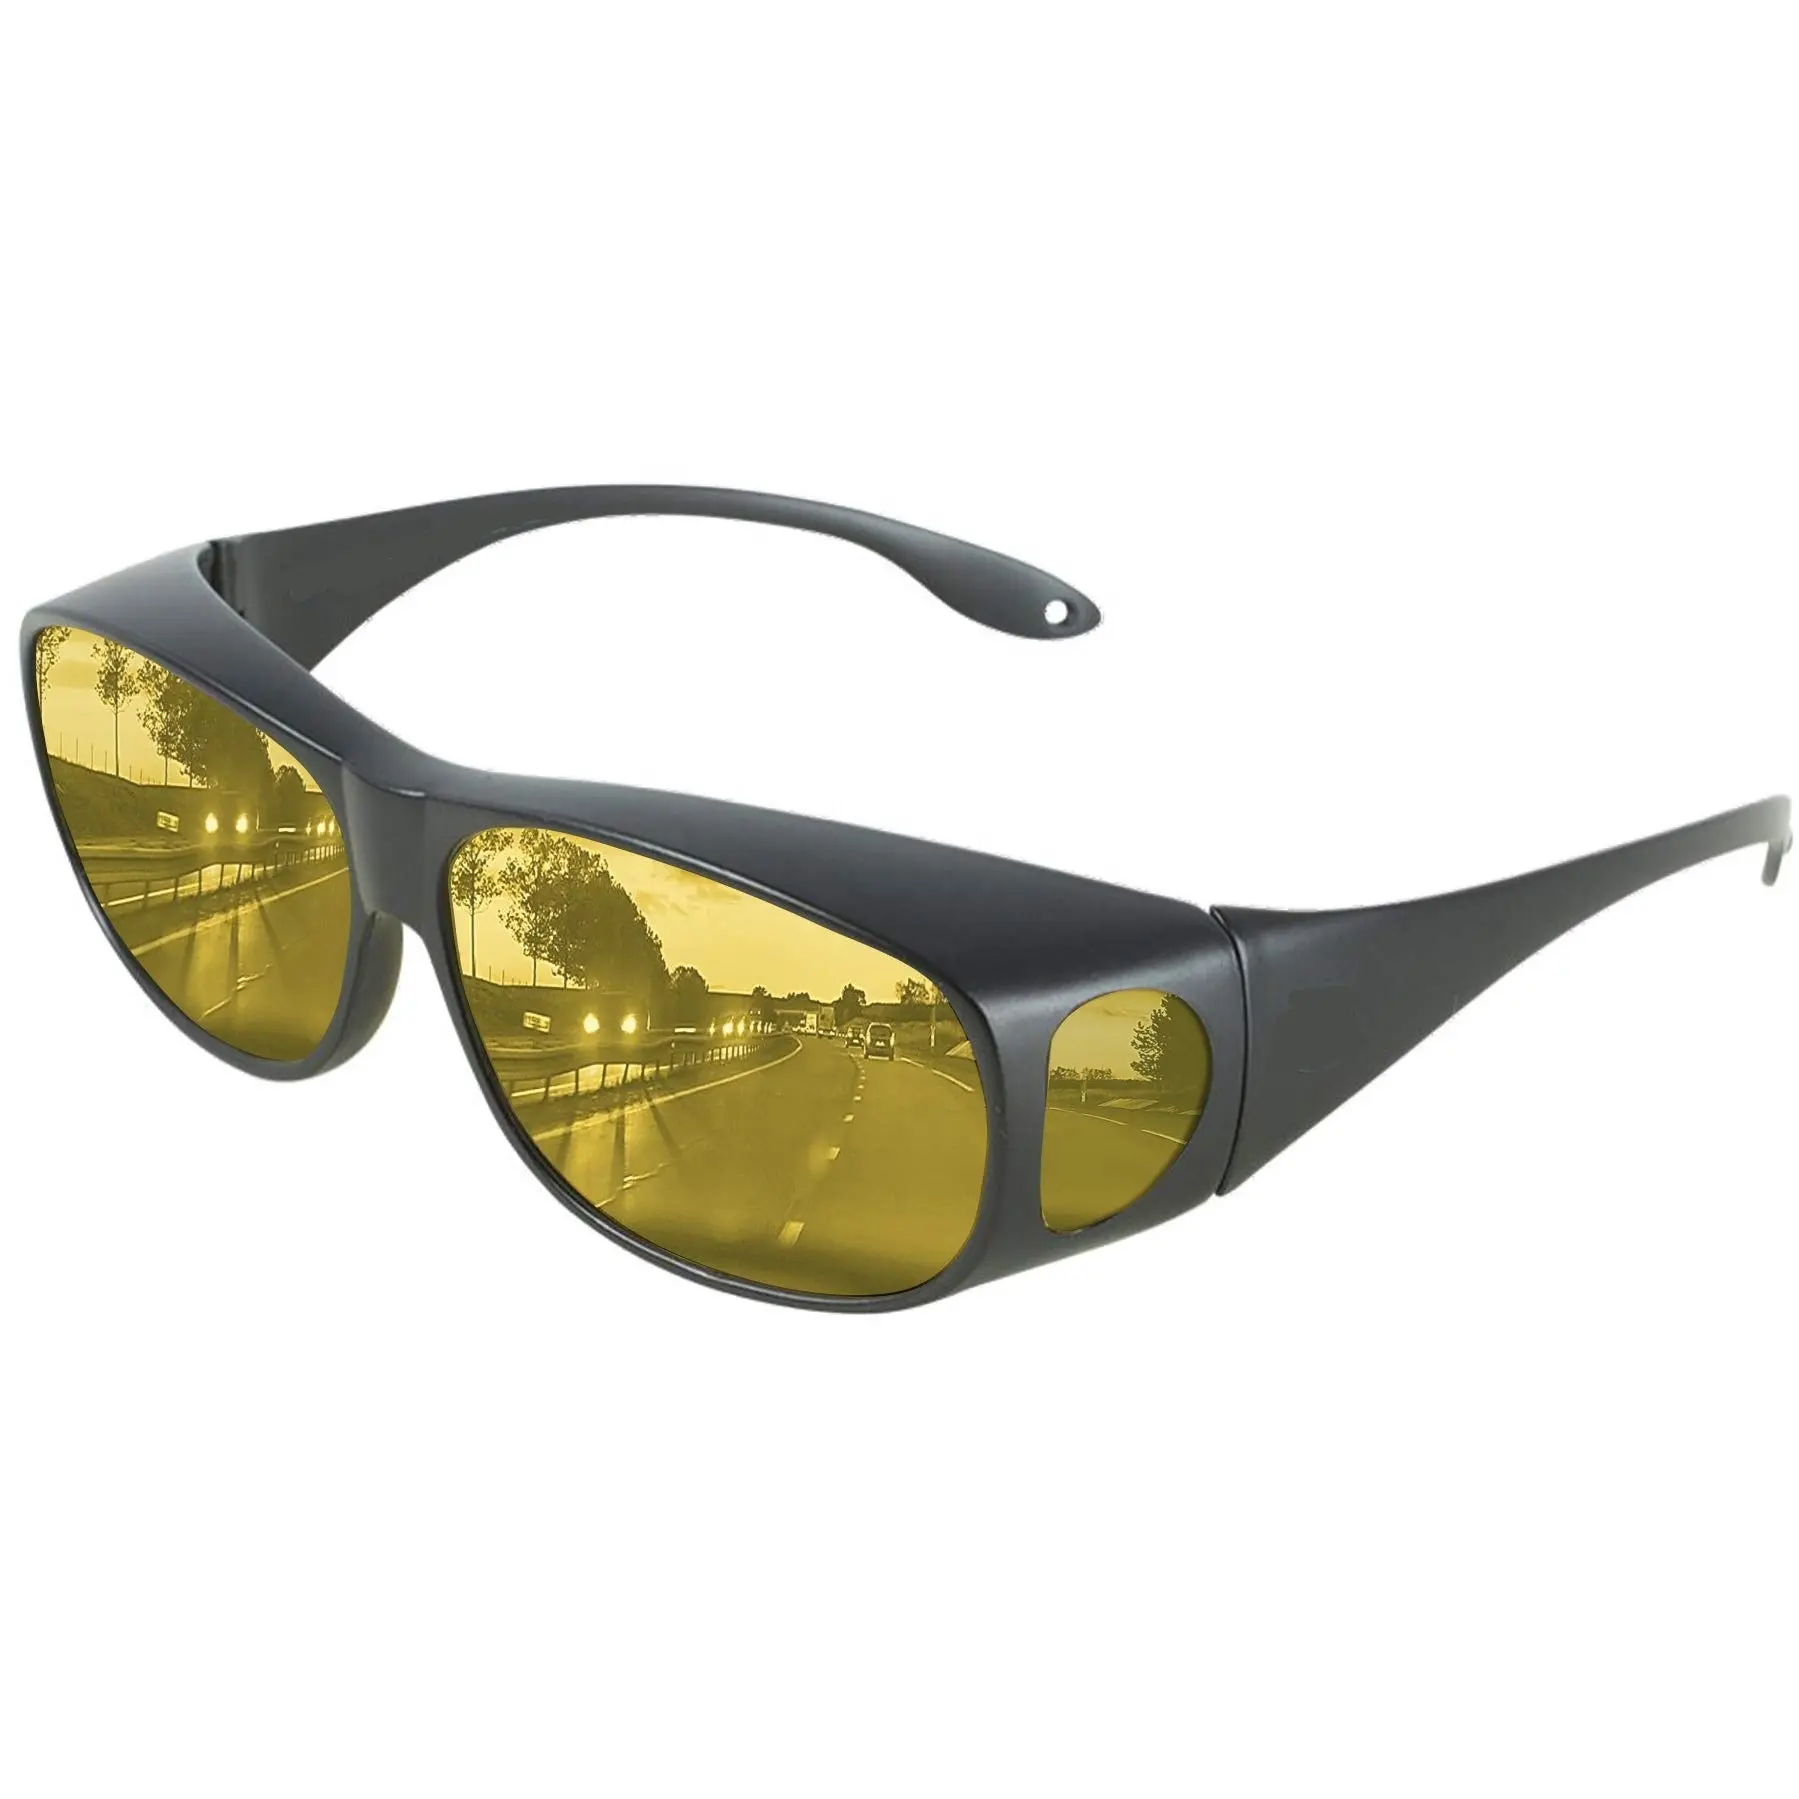 DLL3009 Day Night Driving Vision Glasses polarized fashion sunglasses for Men Women Anti Glare Fit Prescription Glasses